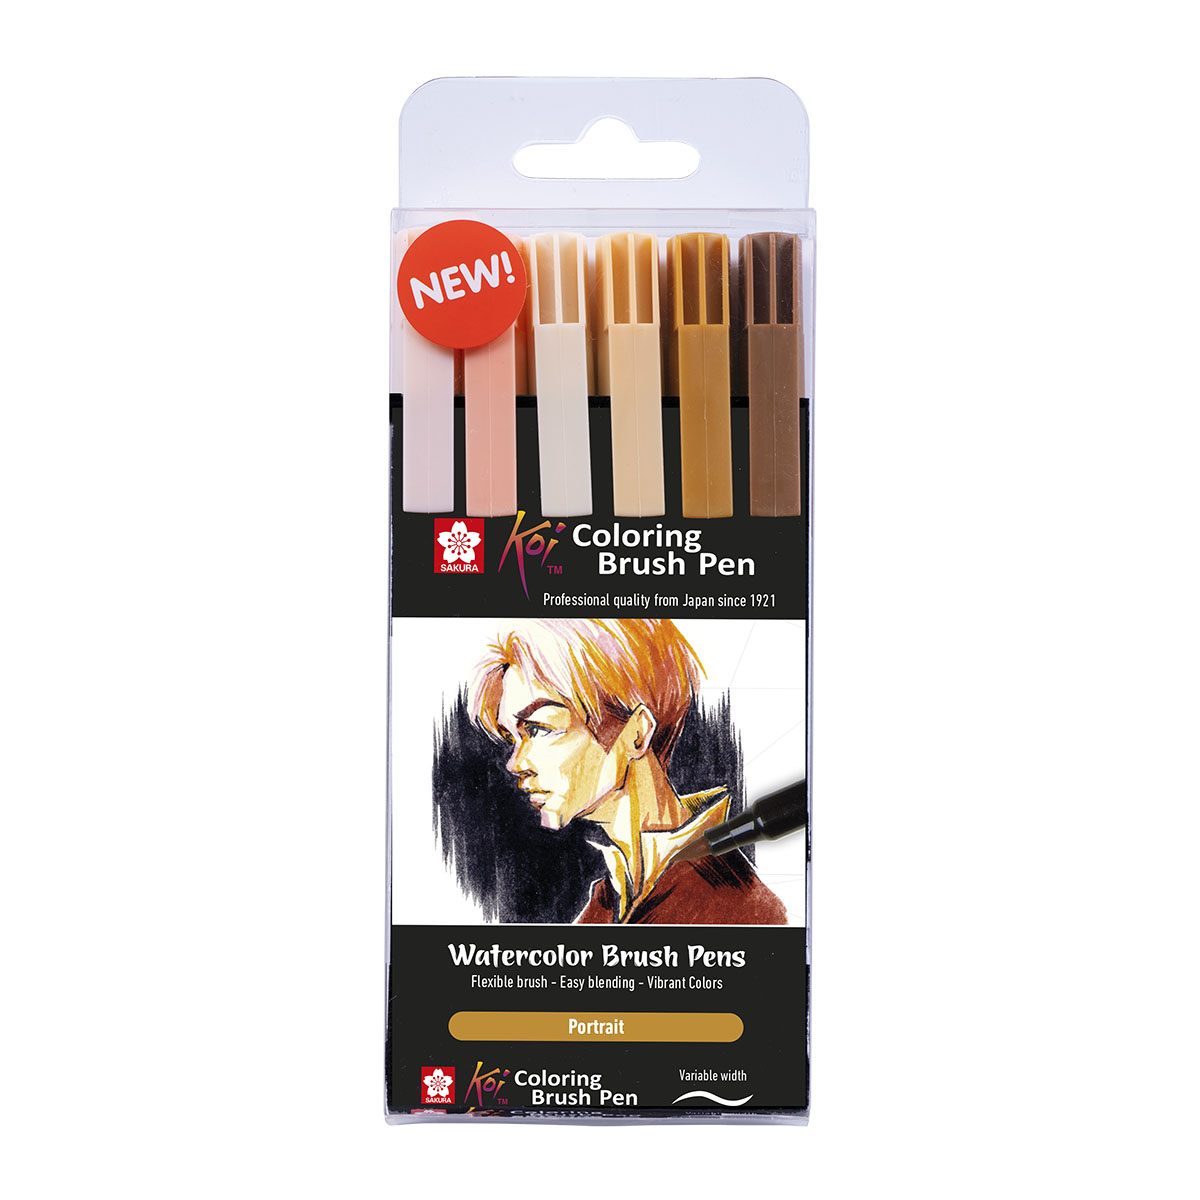 Koi Coloring Brush Pen | Pen